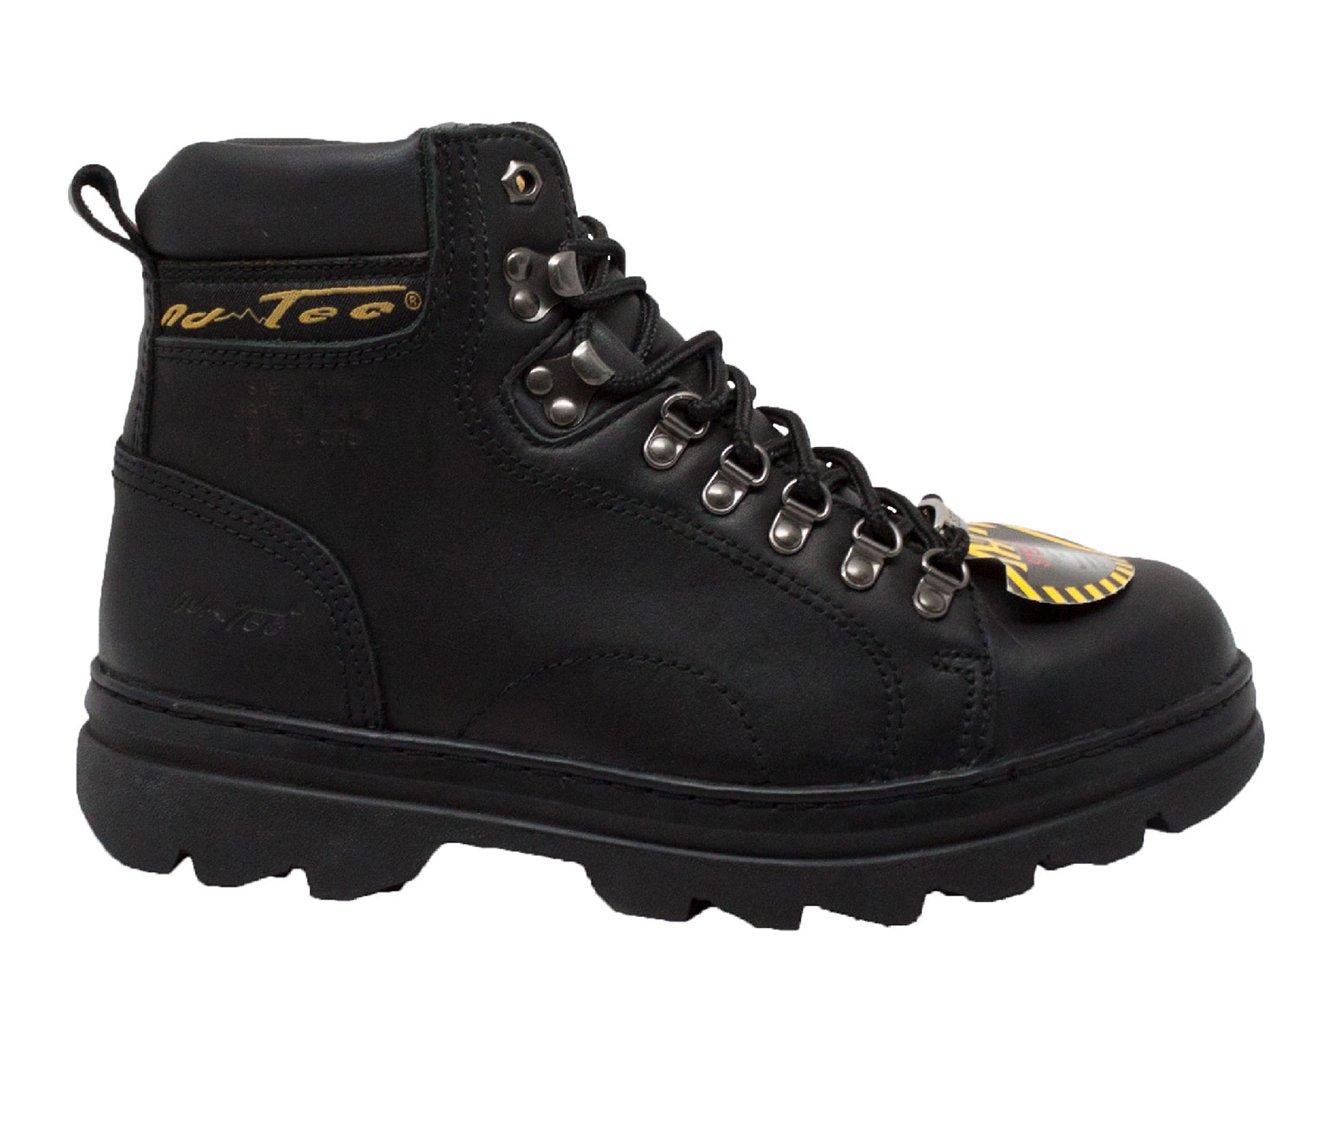 Men's AdTec 6" Steel Toe Hiker Work Boots